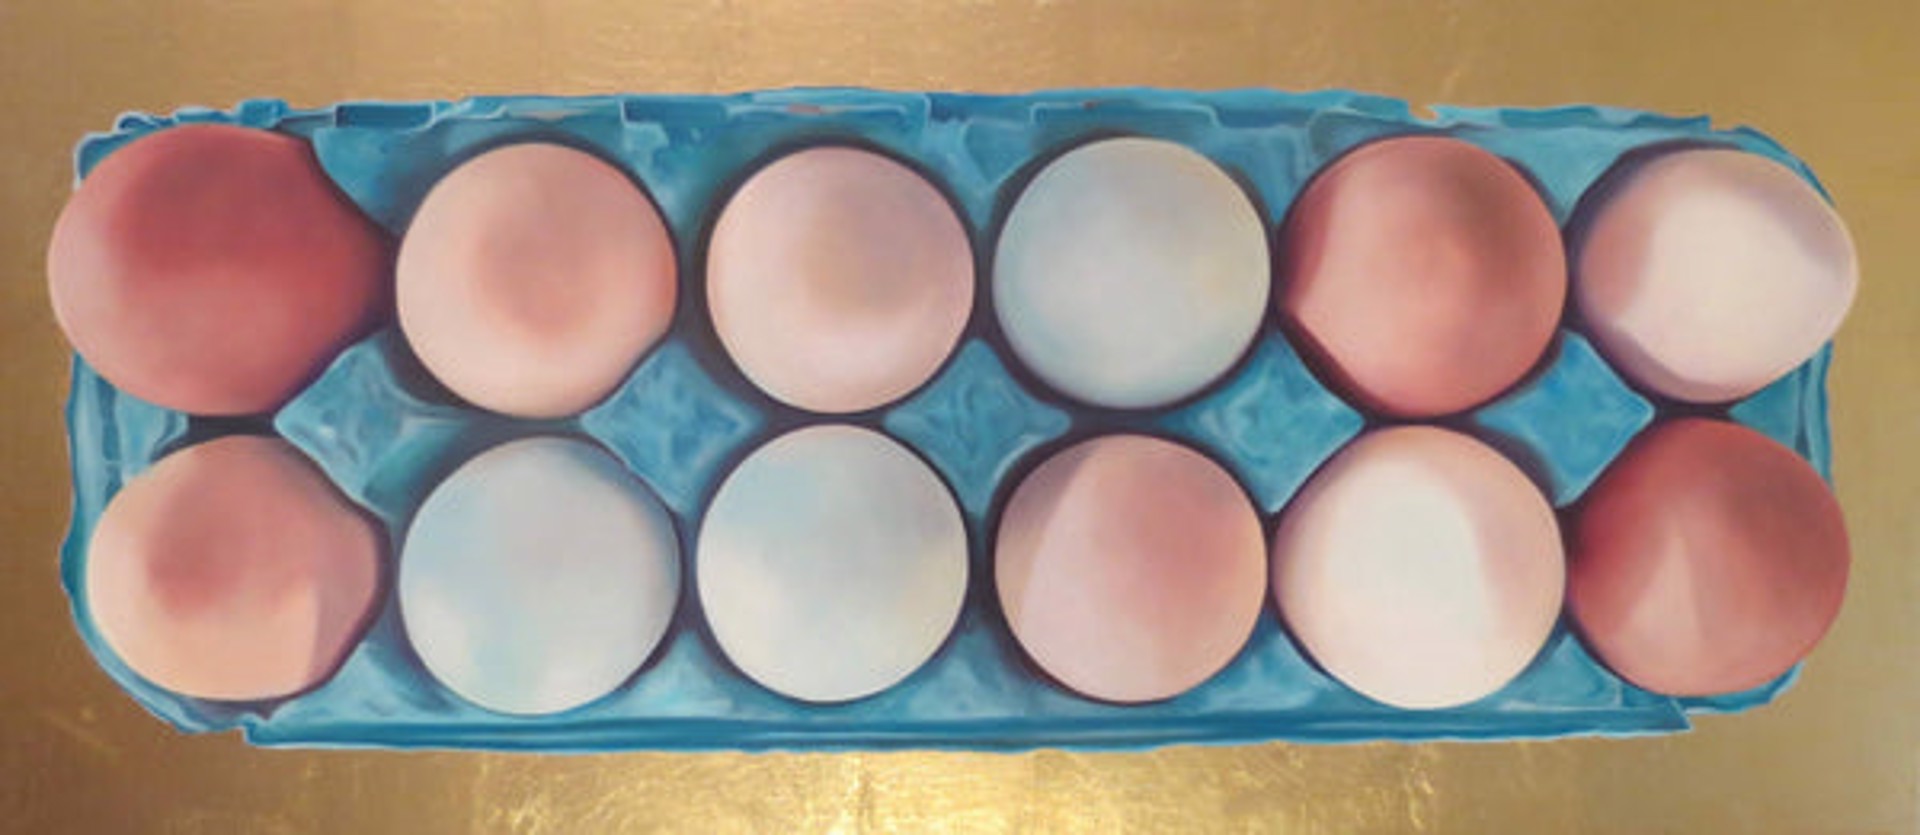 Island Eggs by Stephanie Danforth